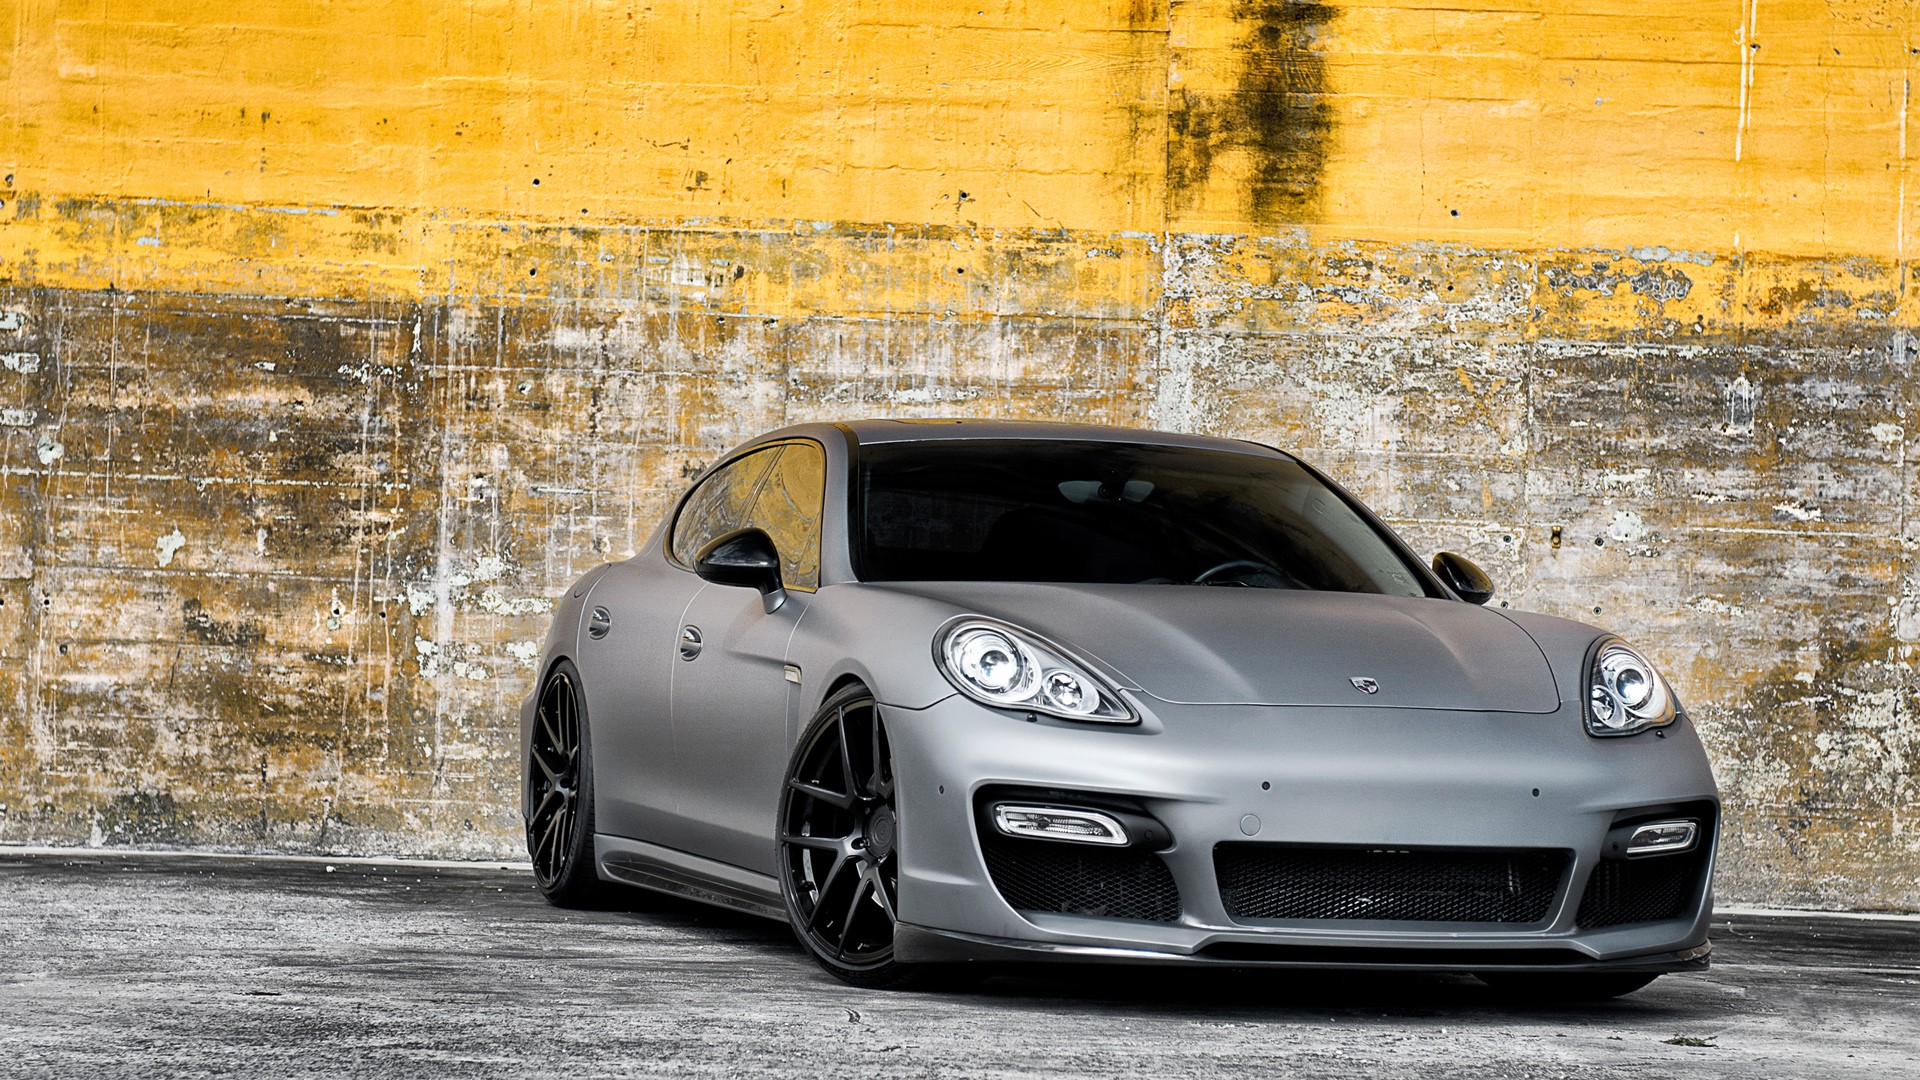 Matte Finish Porsche Panamera Wallpaper - Matte Gray Porsche Panamera , HD Wallpaper & Backgrounds